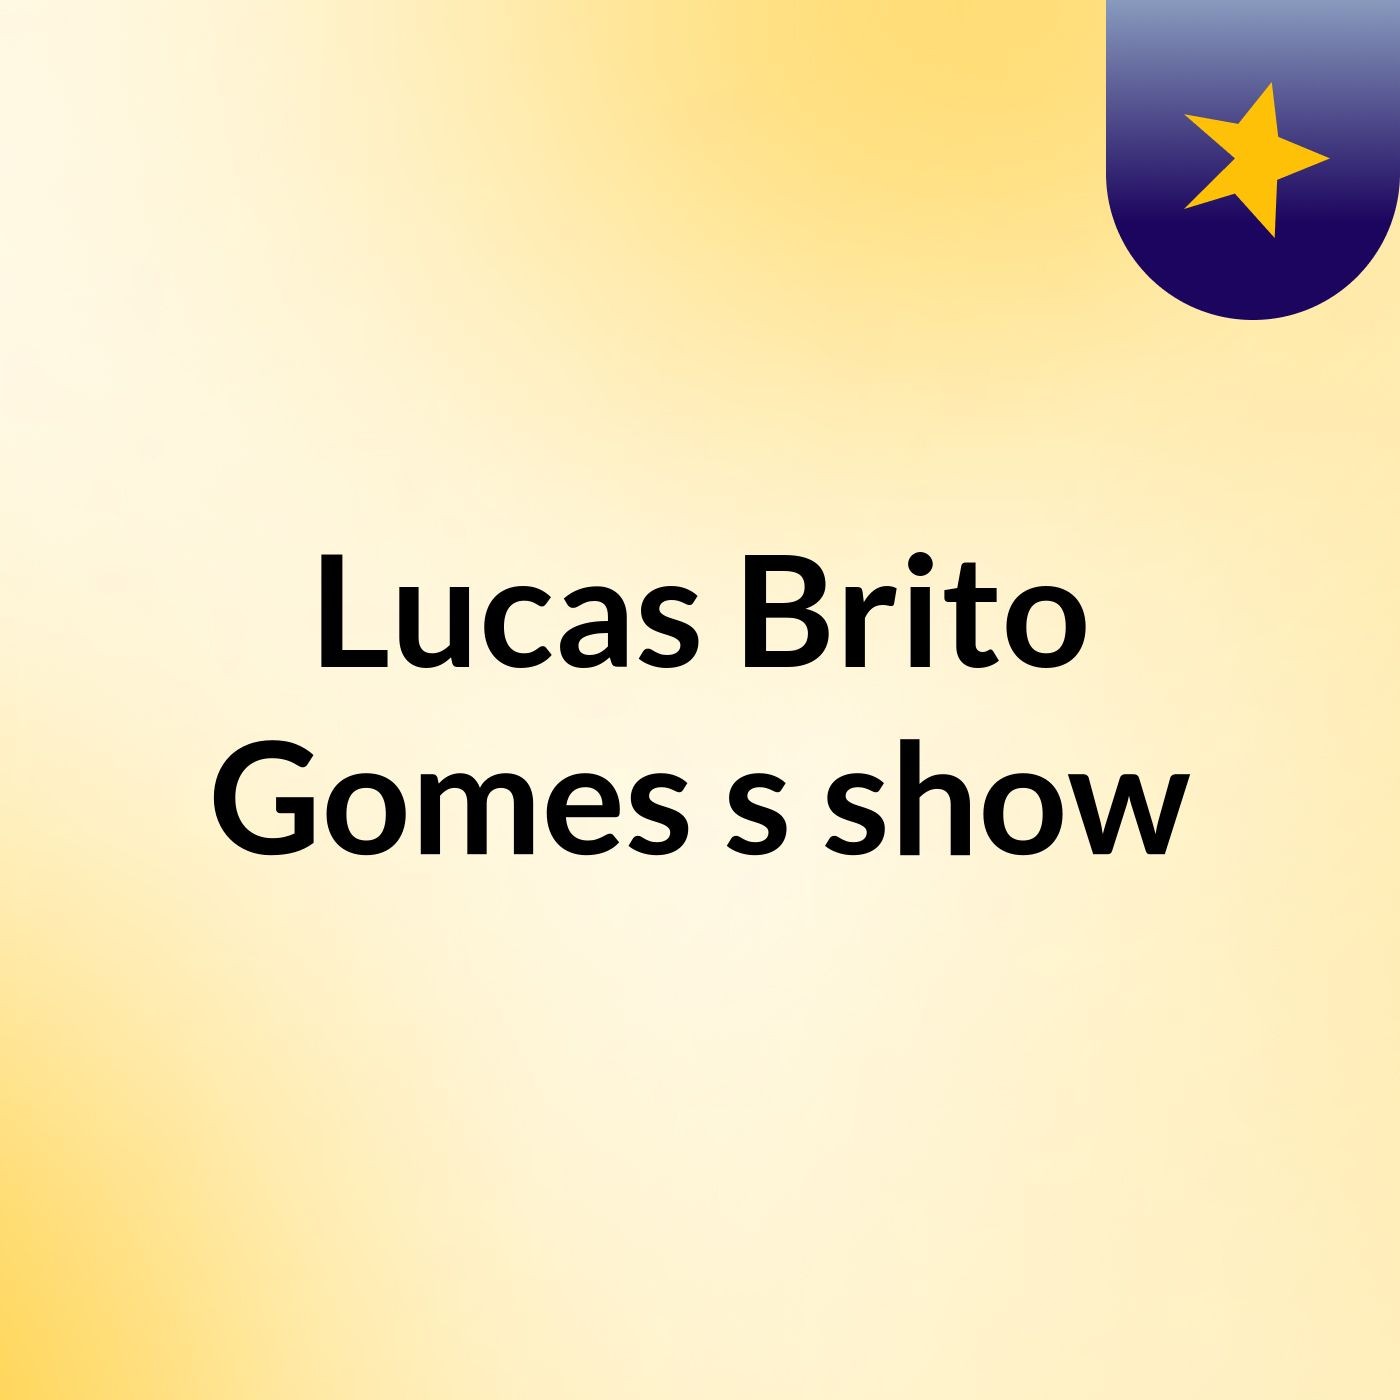 Lucas Brito Gomes's show